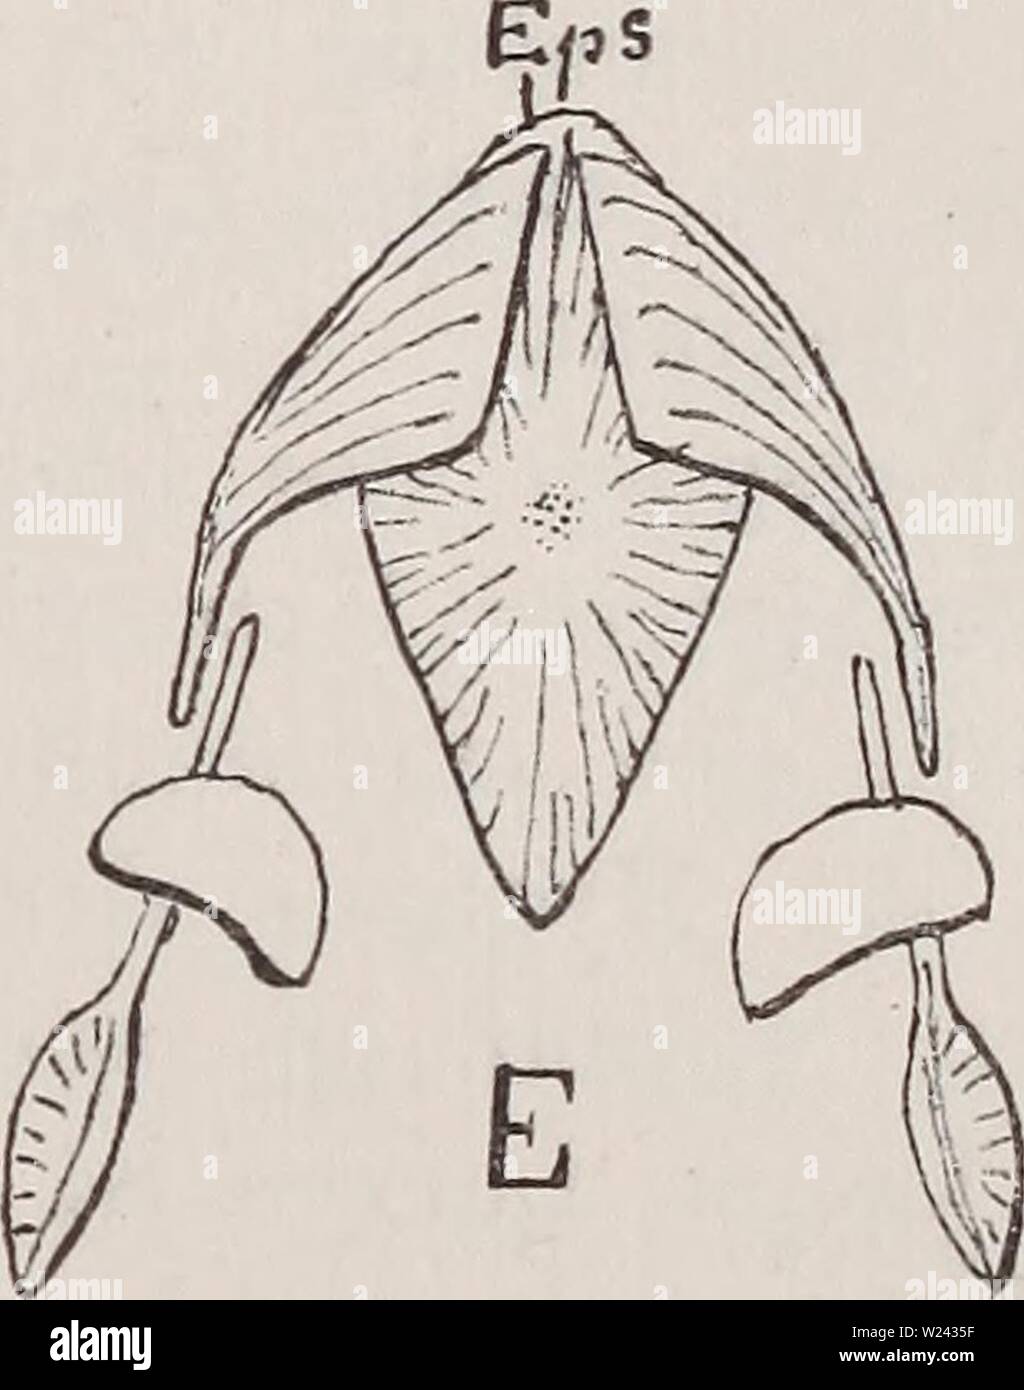 Archive image from page 200 of Das Gliedmassenskelet der Wirbelthiere, mit. Das Gliedmassenskelet der Wirbelthiere, mit besonderer Berücksichtigung des Schulter- und Beckengürtels bei Fischen, Amphibien und Reptilien  dasgliedmassensk00wied Year: 1892  Textfigur 29, A—E. Scliiütergürtel von Stegocephalen (Ventralseite). Nach H. Credner. A Branchiosaurus /i, B Pelosaurus Vi, C Discosaurus Vi, D Hylonomus Vi, E Archegosau rus, circa U der natürl. Grösse. Ups Epister- num, Cl Clavicula, S Scapula, C Coracoid. — Diese Bezeichnungen lassen sich von der Figur C leicht auf die übrigen übertragen, s K Stock Photo